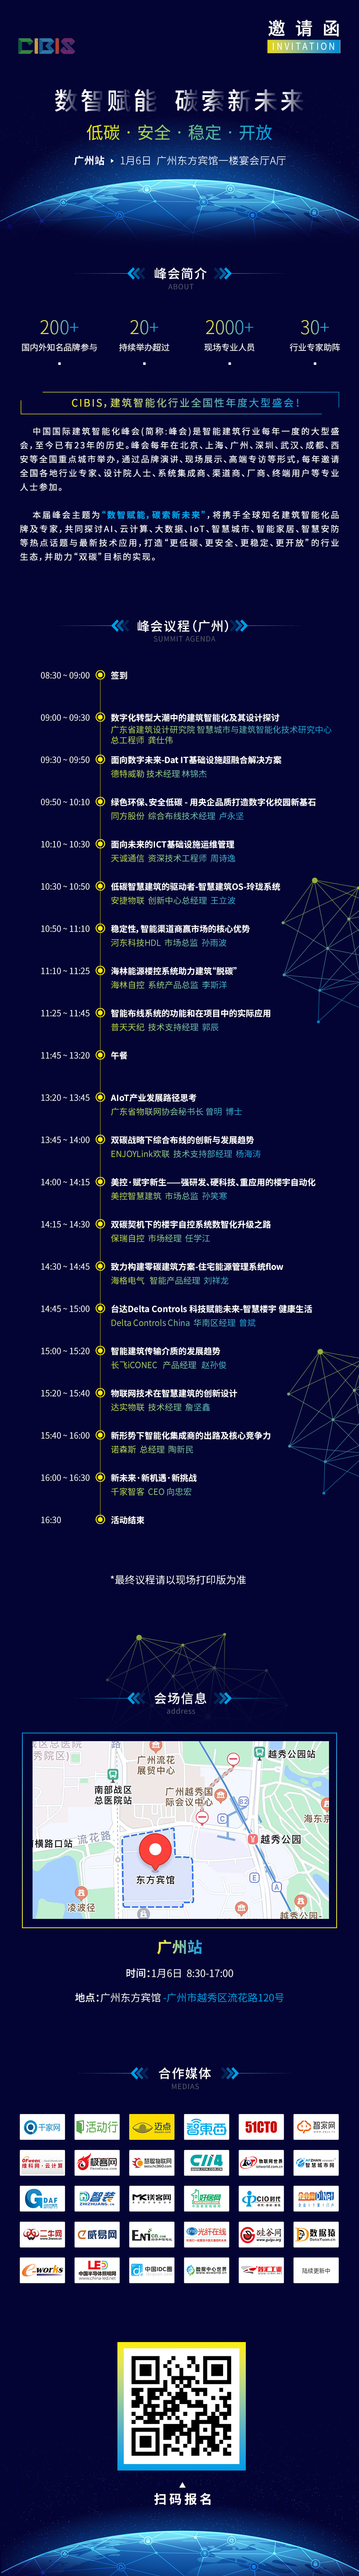 广州最新议程图.jpg